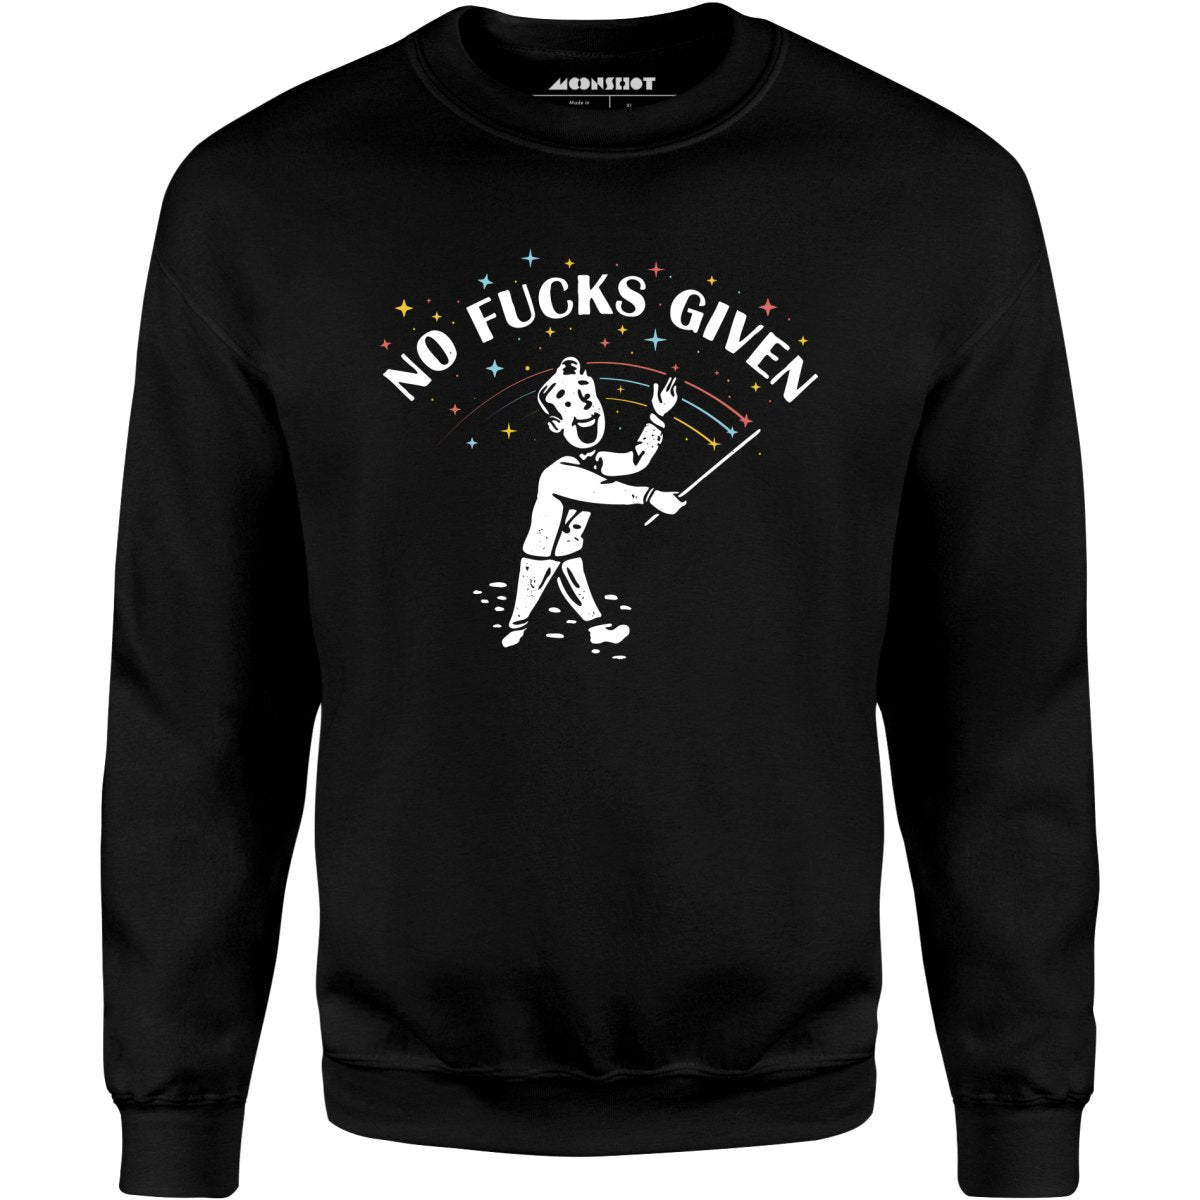 No Fucks Given - Unisex Sweatshirt